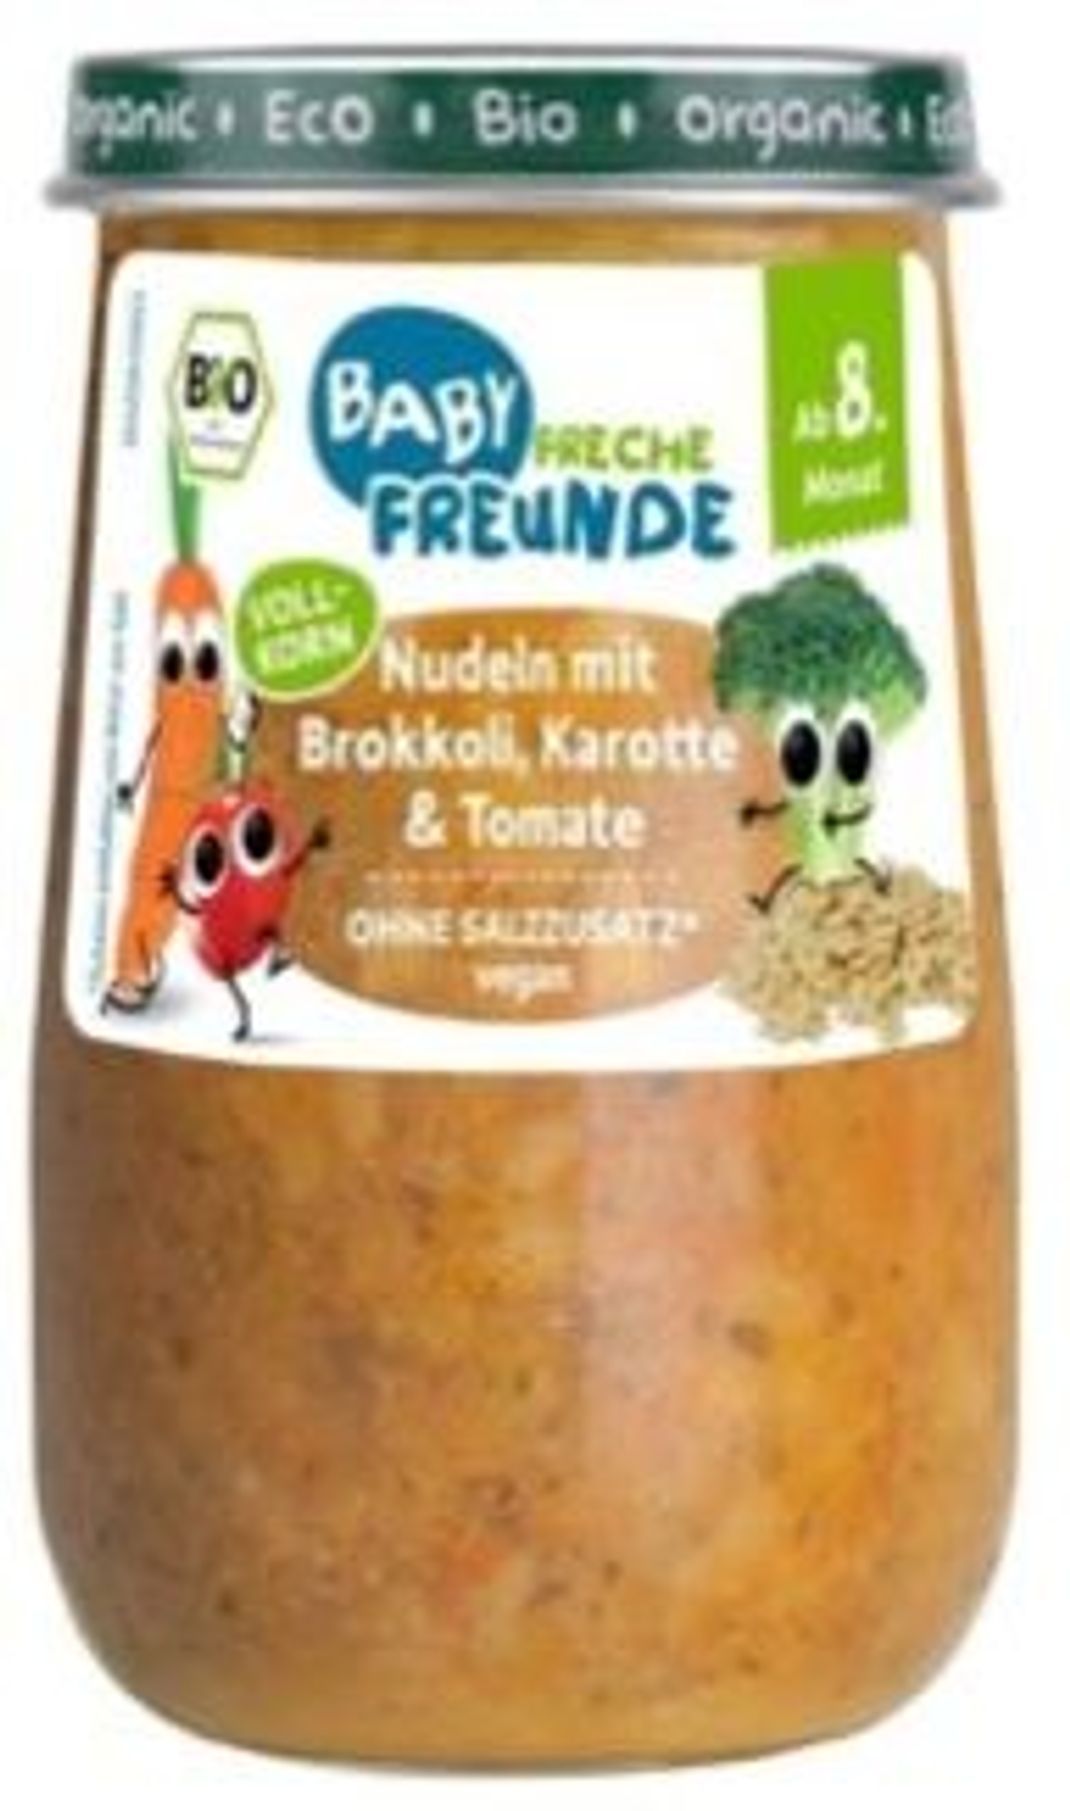 Das Beikostgläschen "Nudeln mit Brokkoli, Karotte und Tomate" (ab 8. Monat) der Marke Baby Freche Freunde wird wegen des Verdachts auf Tropanalkaloide zurückgerufen (Screenshot Warenrückruf Erdbär GmbH).